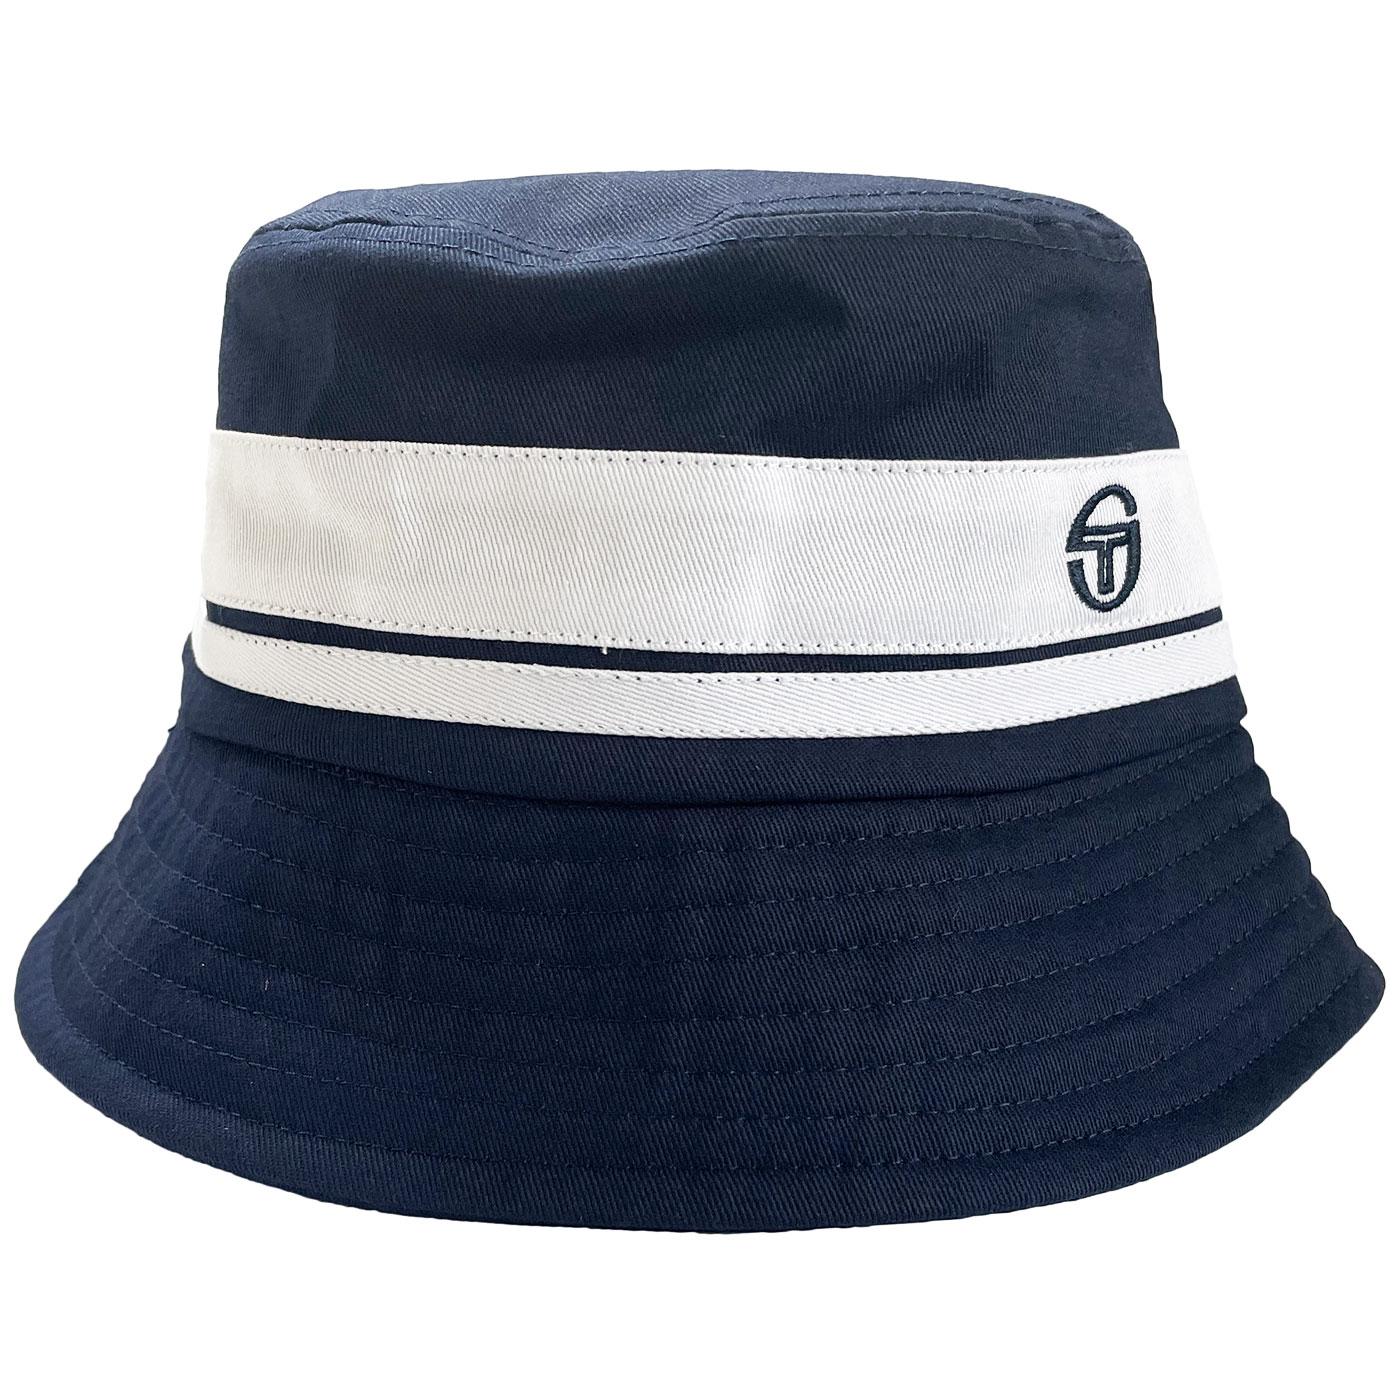 Newsford SERGIO TACCHINI Retro 90s Bucket Hat (NS)